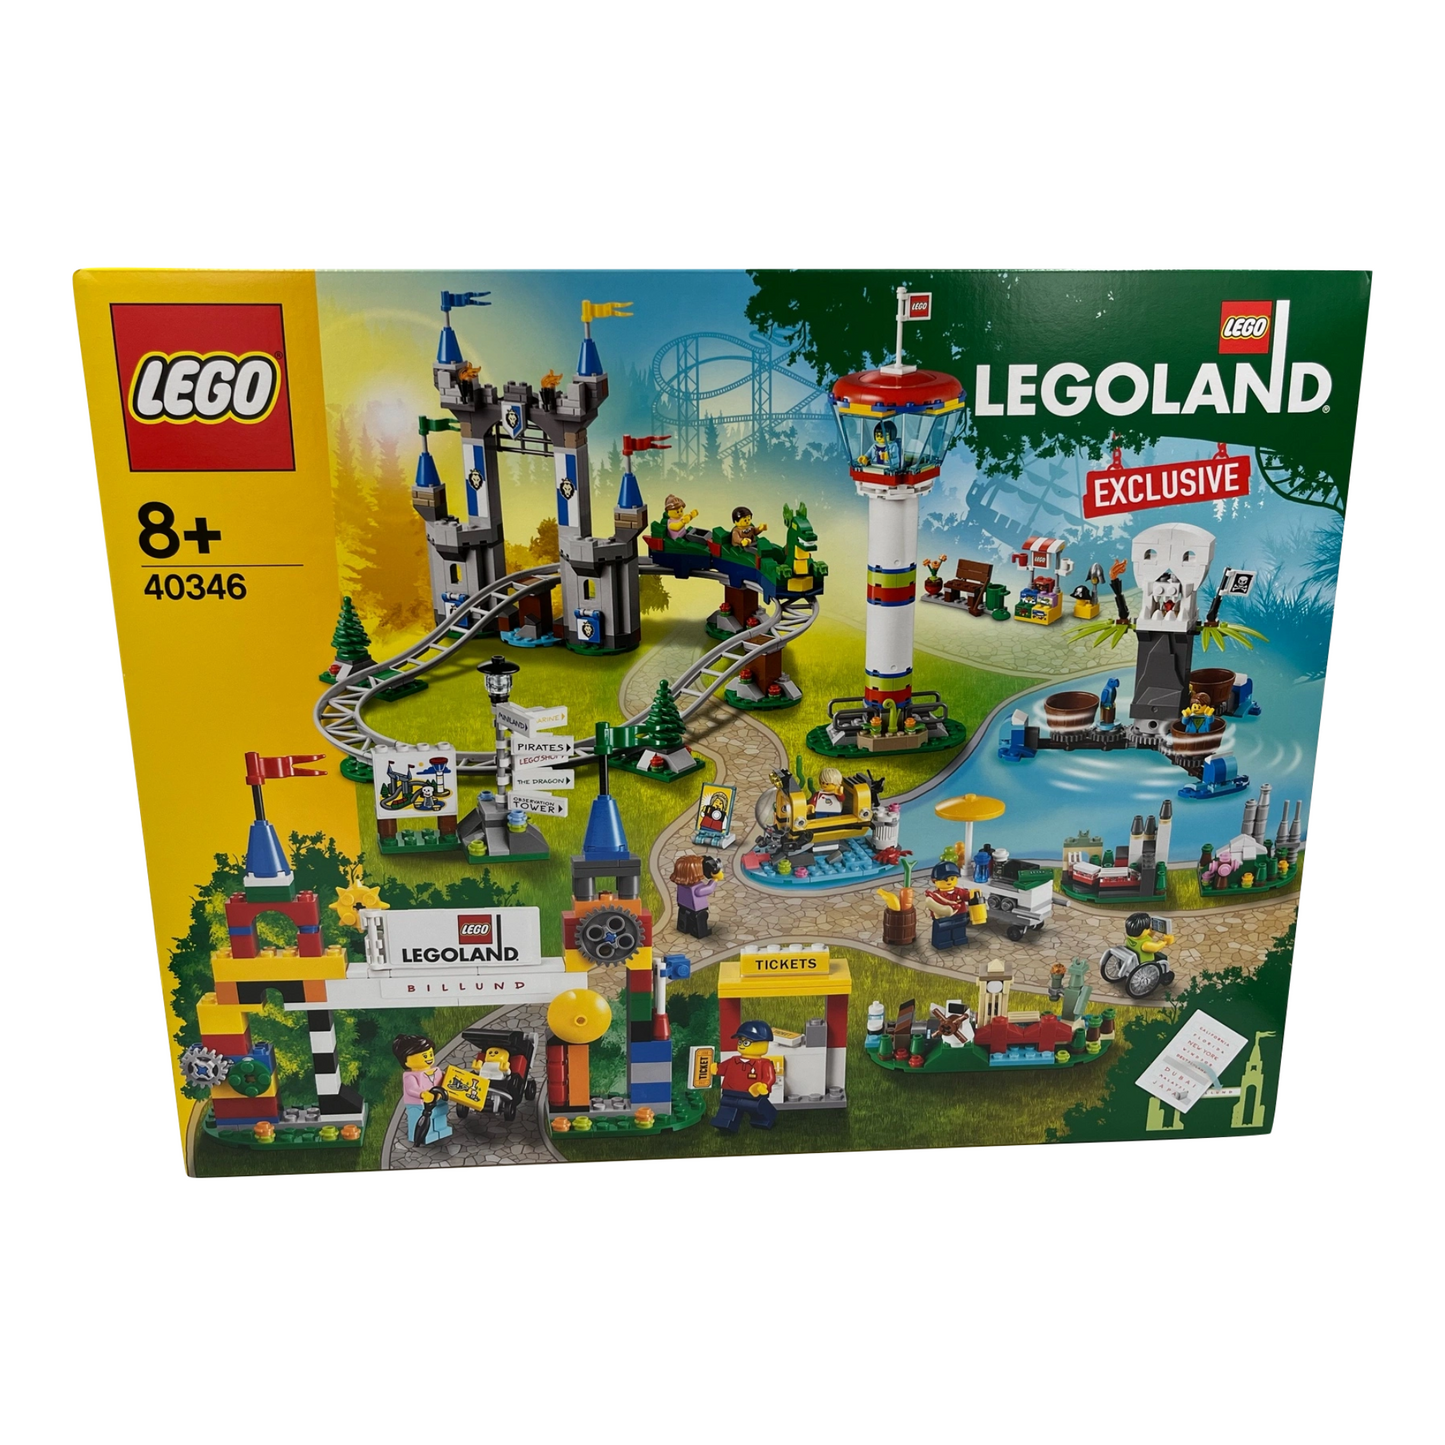 Lego 40346 - Promotional: Legoland Park